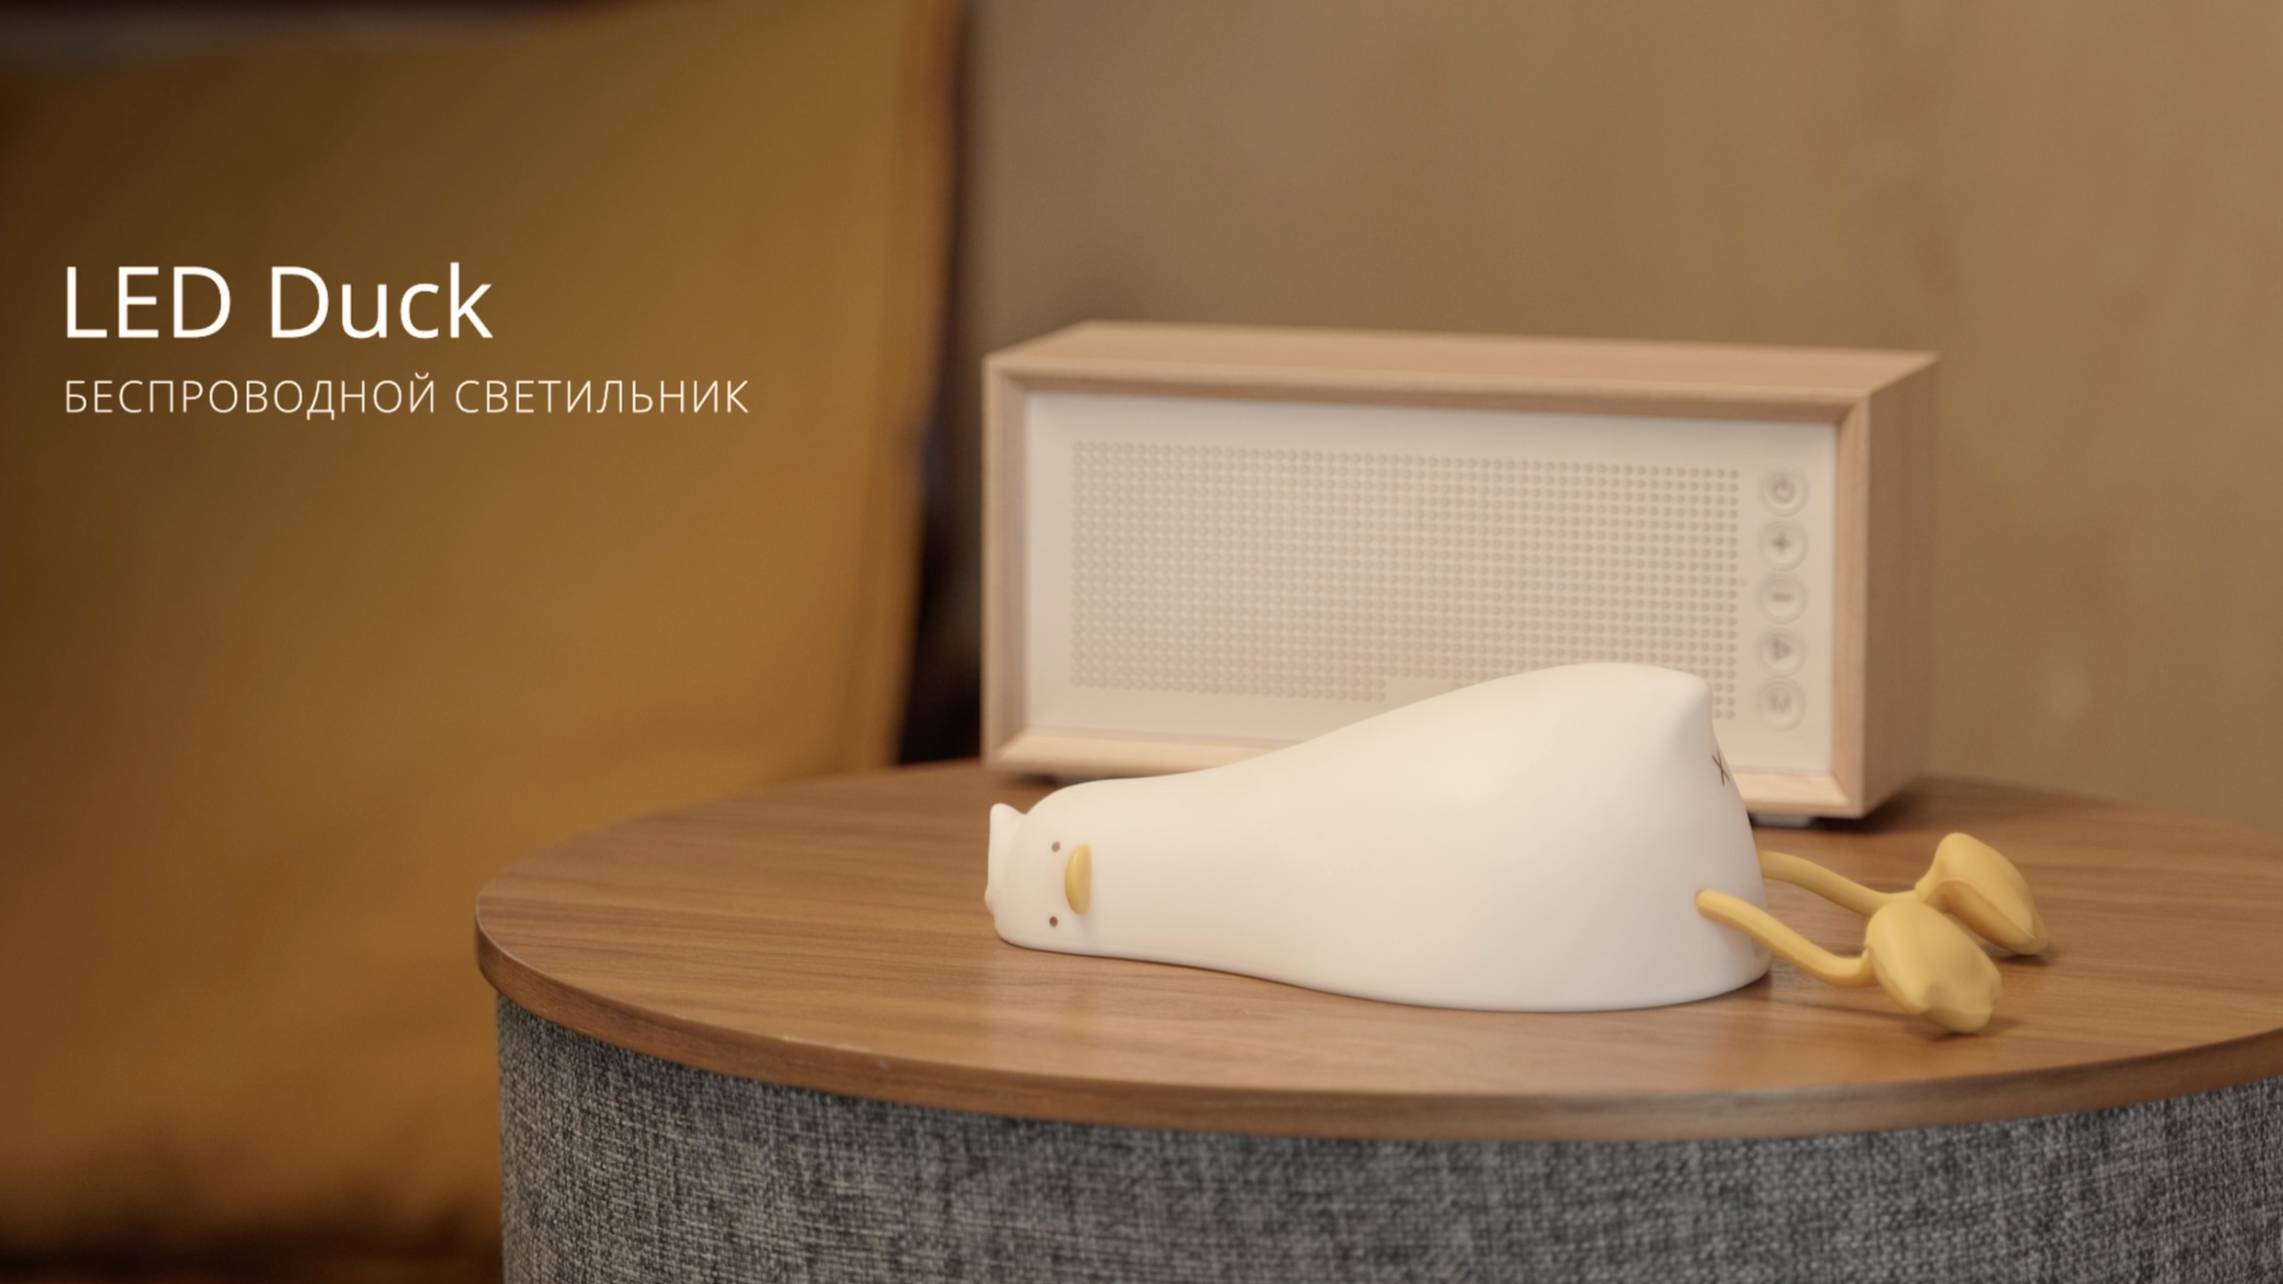 Беспроводной ночник LED Duck. Очаровательный дизайн, встроенный таймер и 2 режима яркости